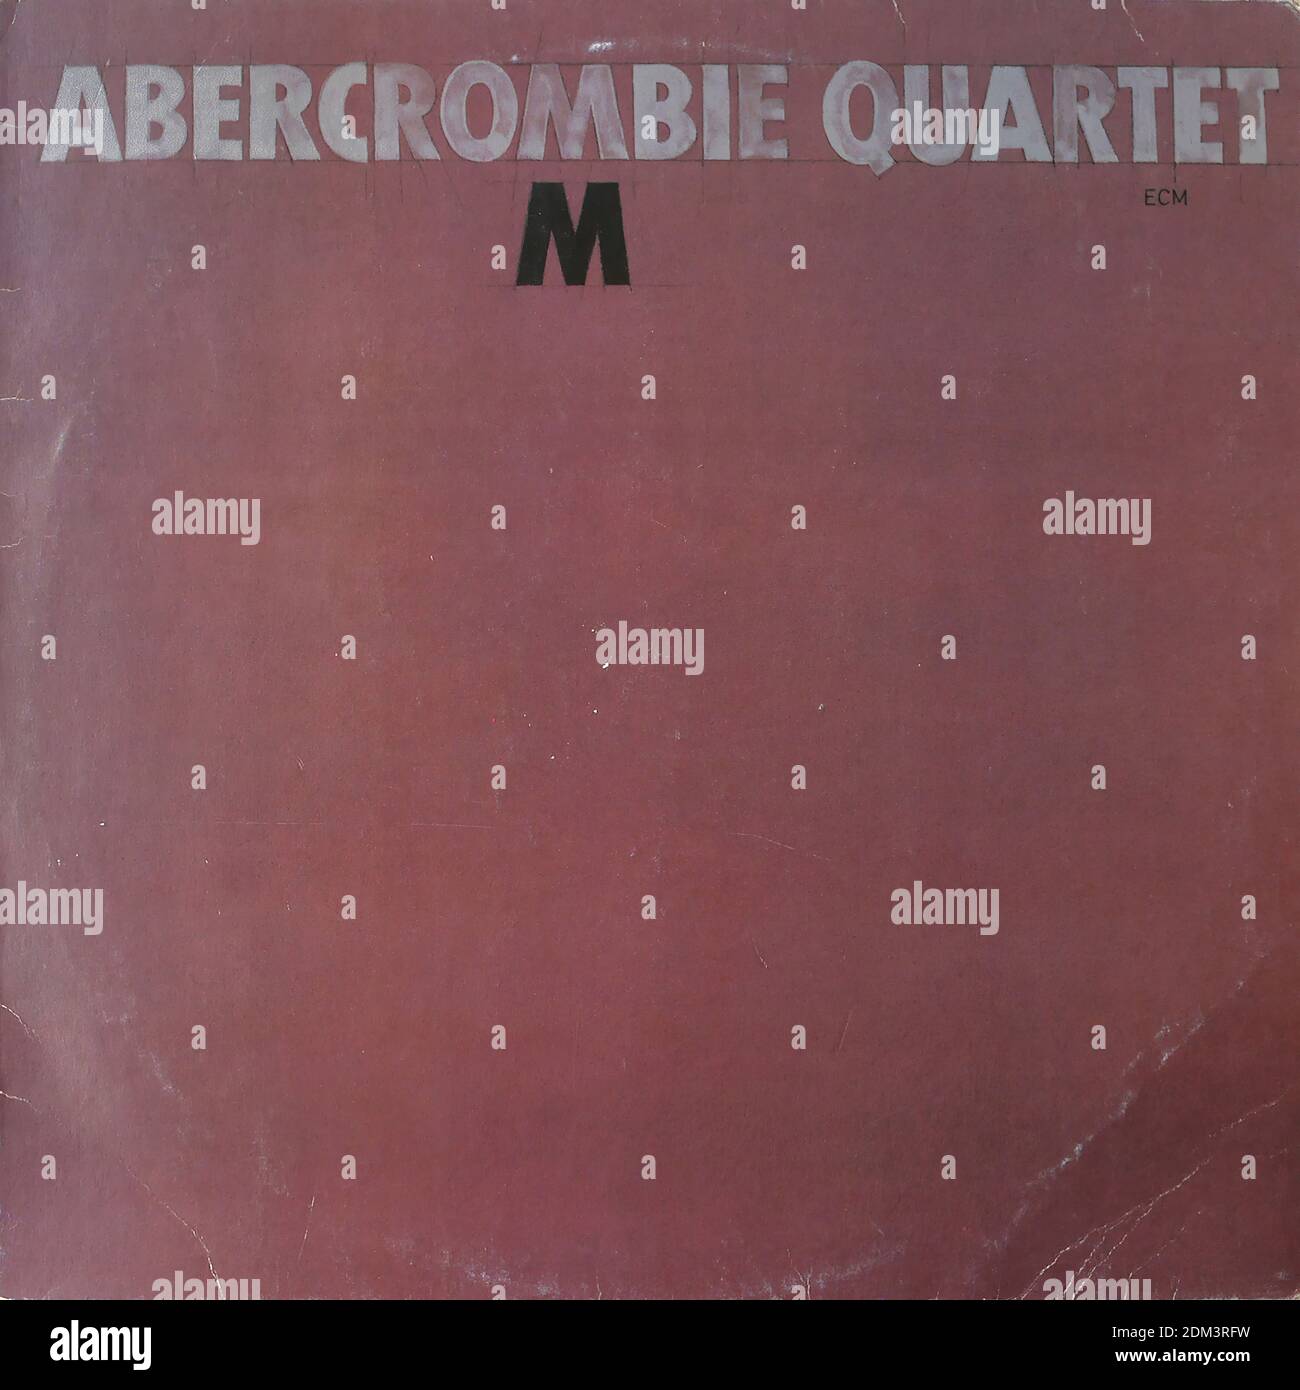 Abercrombie Quartet - M, ECM 1191, 1981 - Vintage vinyle album couverture Banque D'Images